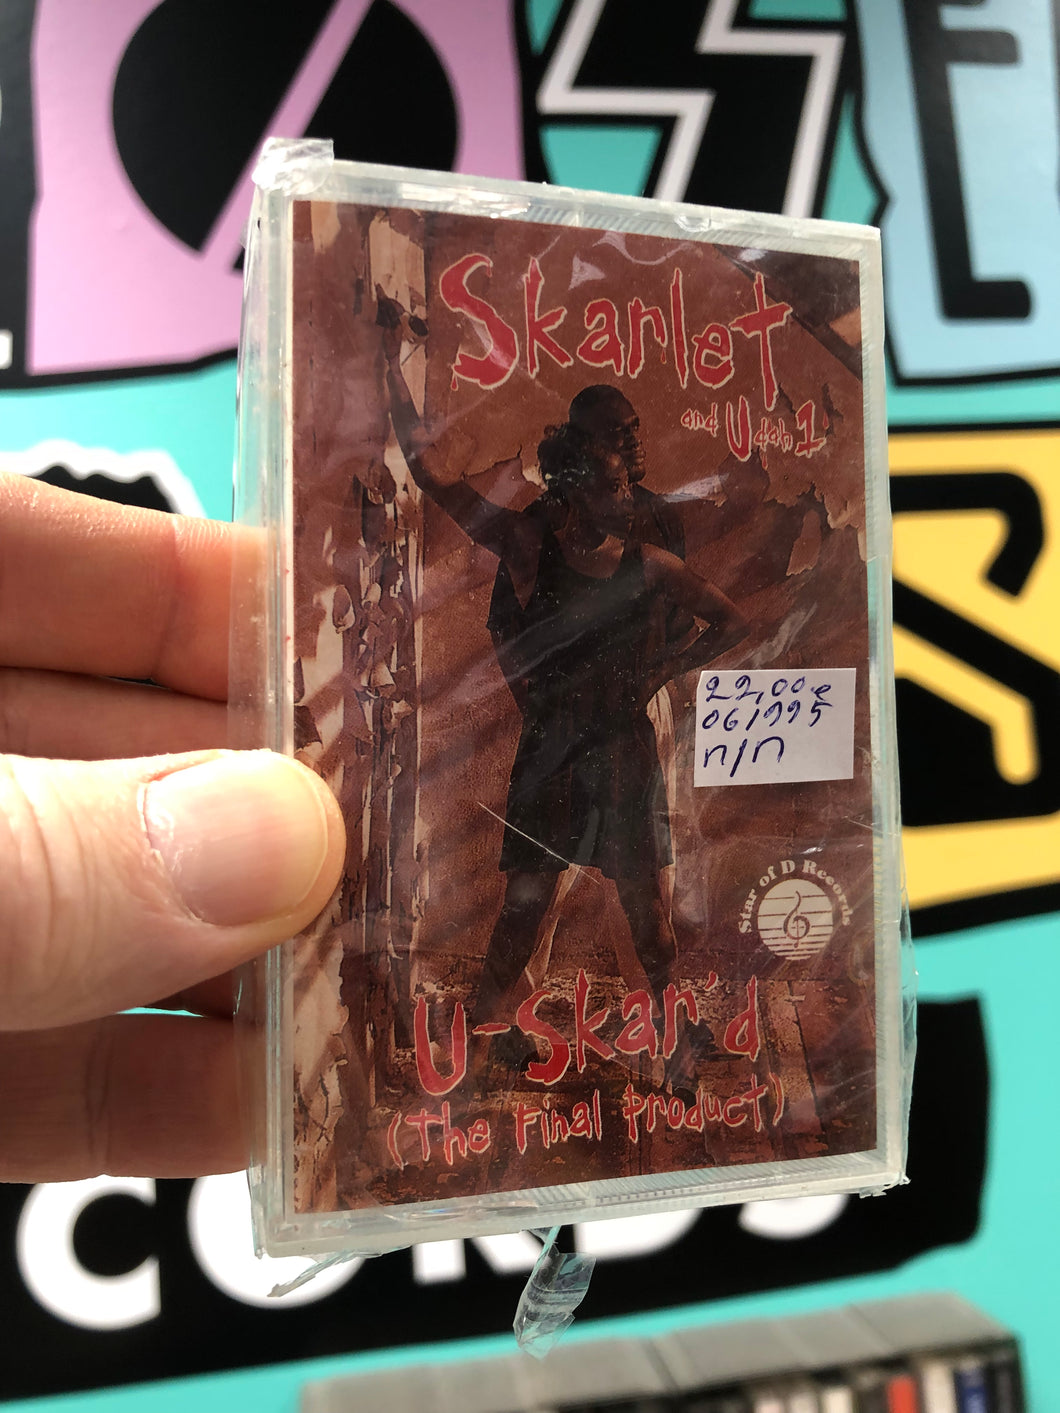 Skarlet: U-Skar’d (The Final Product), OG, US 1995